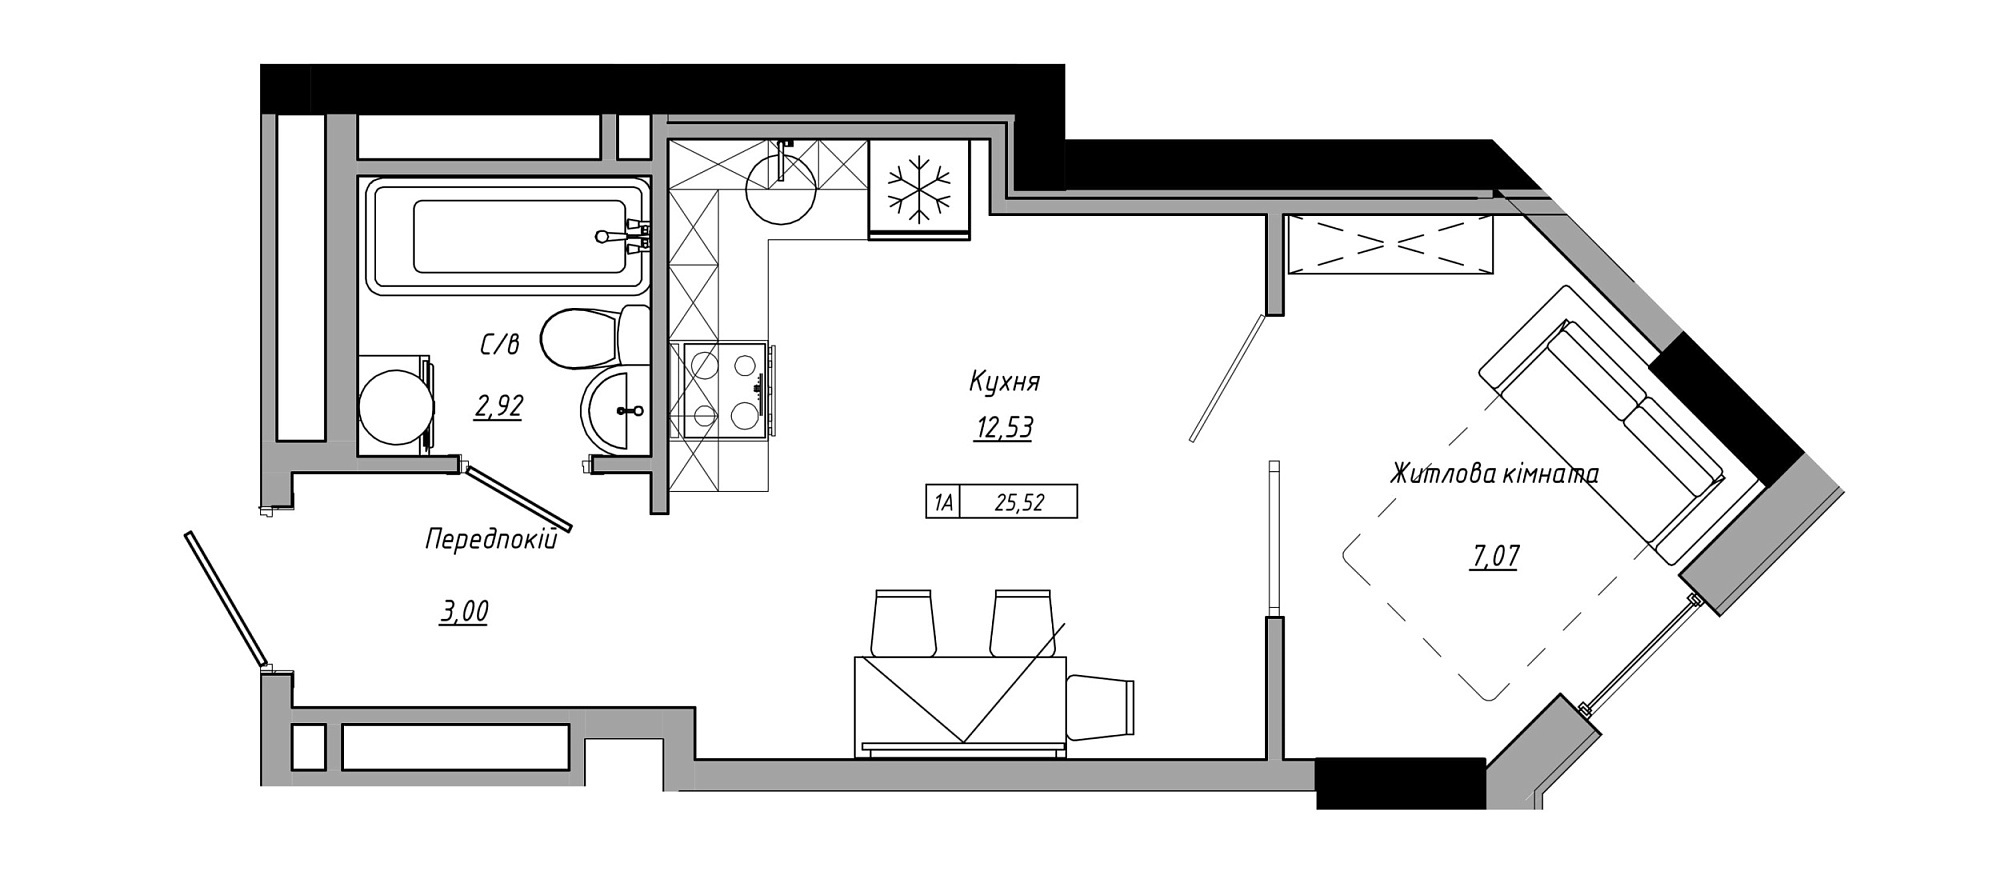 Планировка 1-к квартира площей 25.52м2, AB-21-11/00001.